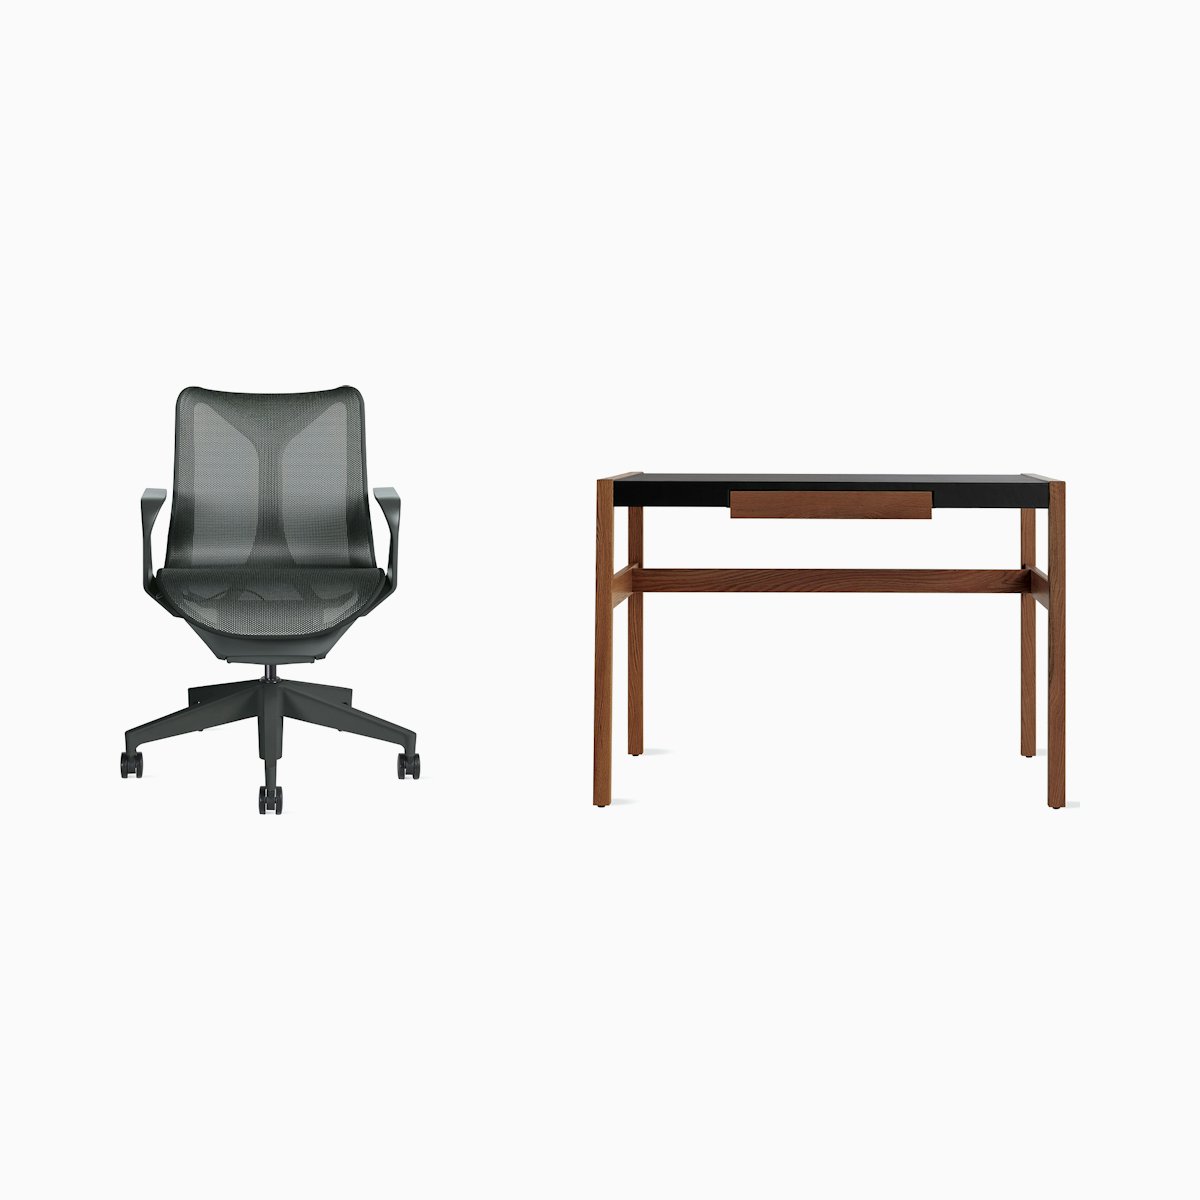 Cosm Chair - Risom Desk Office Bundle